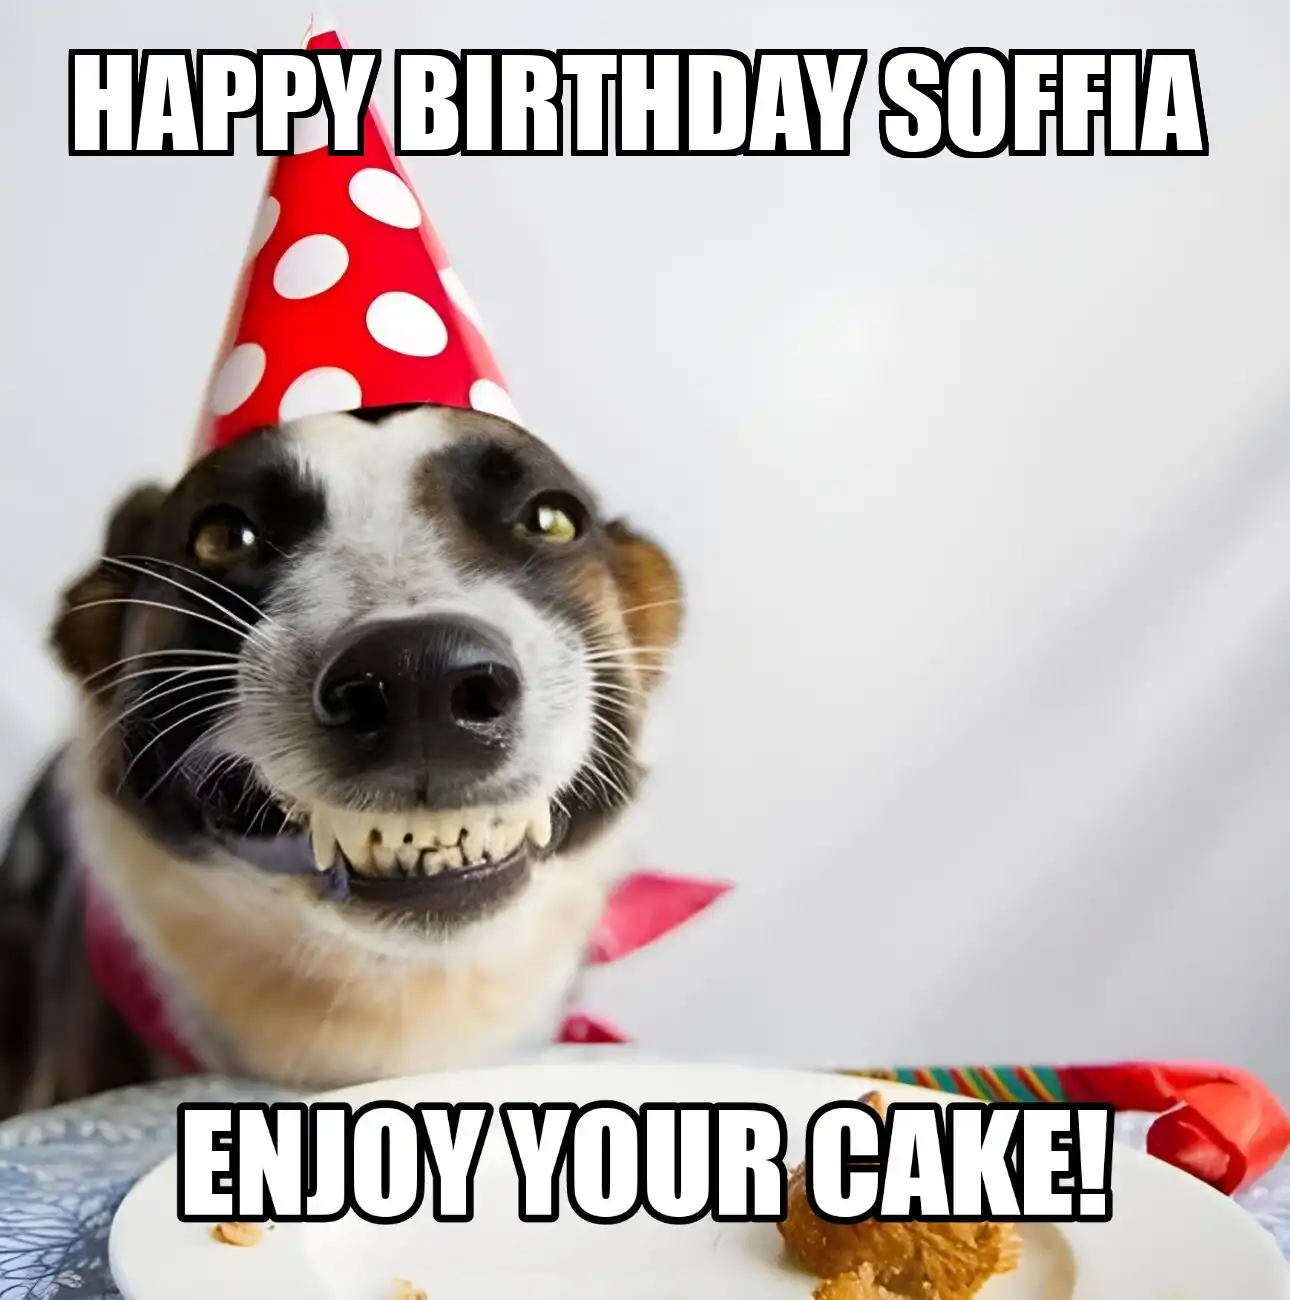 Happy Birthday Soffia Enjoy Your Cake Dog Meme